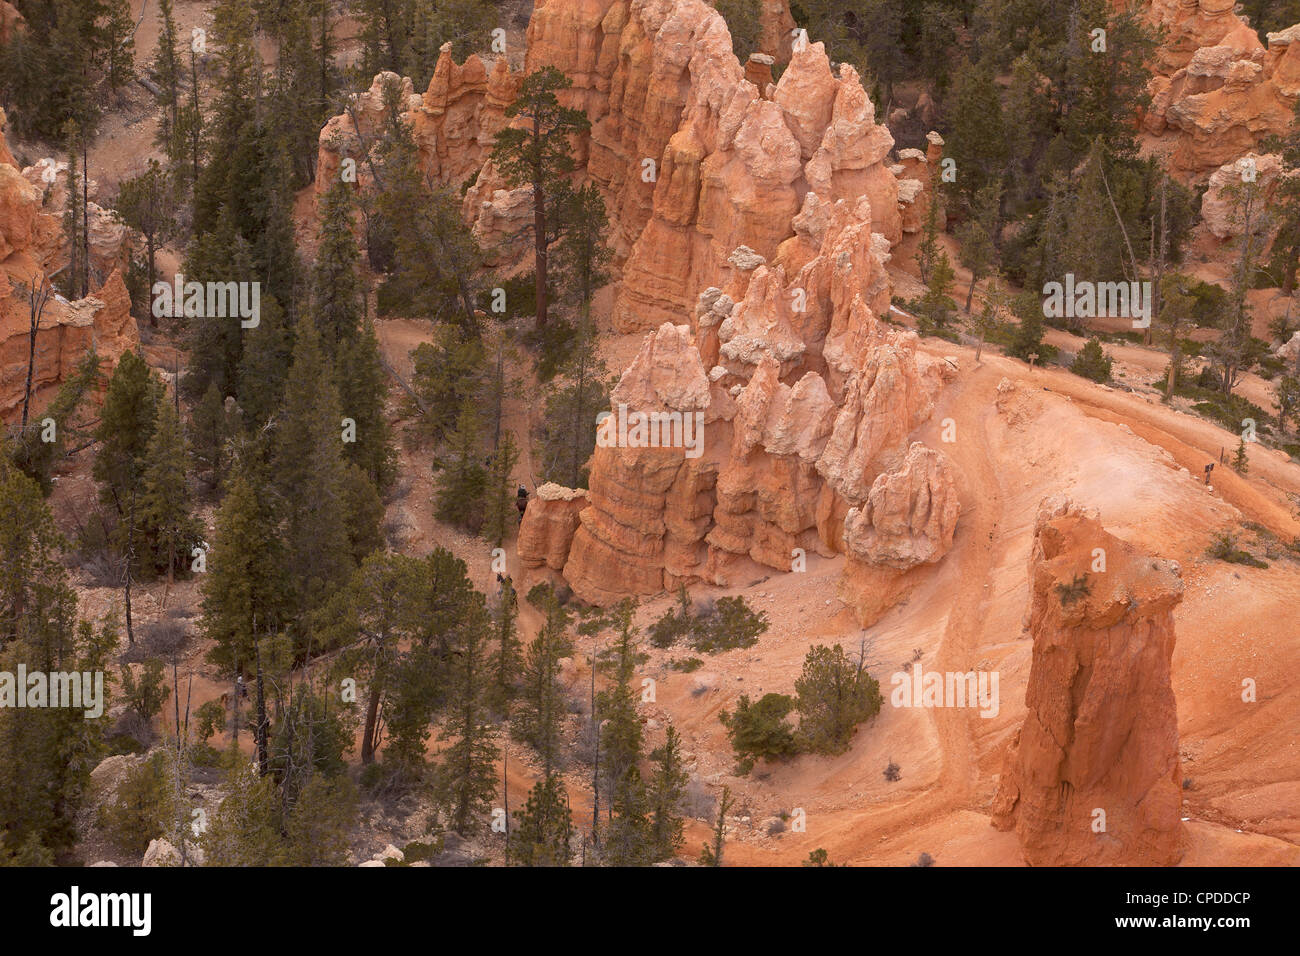 Bryce-Canyon-Nationalpark im Süden von Utah. Robust und dramatischen roten Stein Felsen, interessante Formationen, Pinien. Don Despain Stockfoto